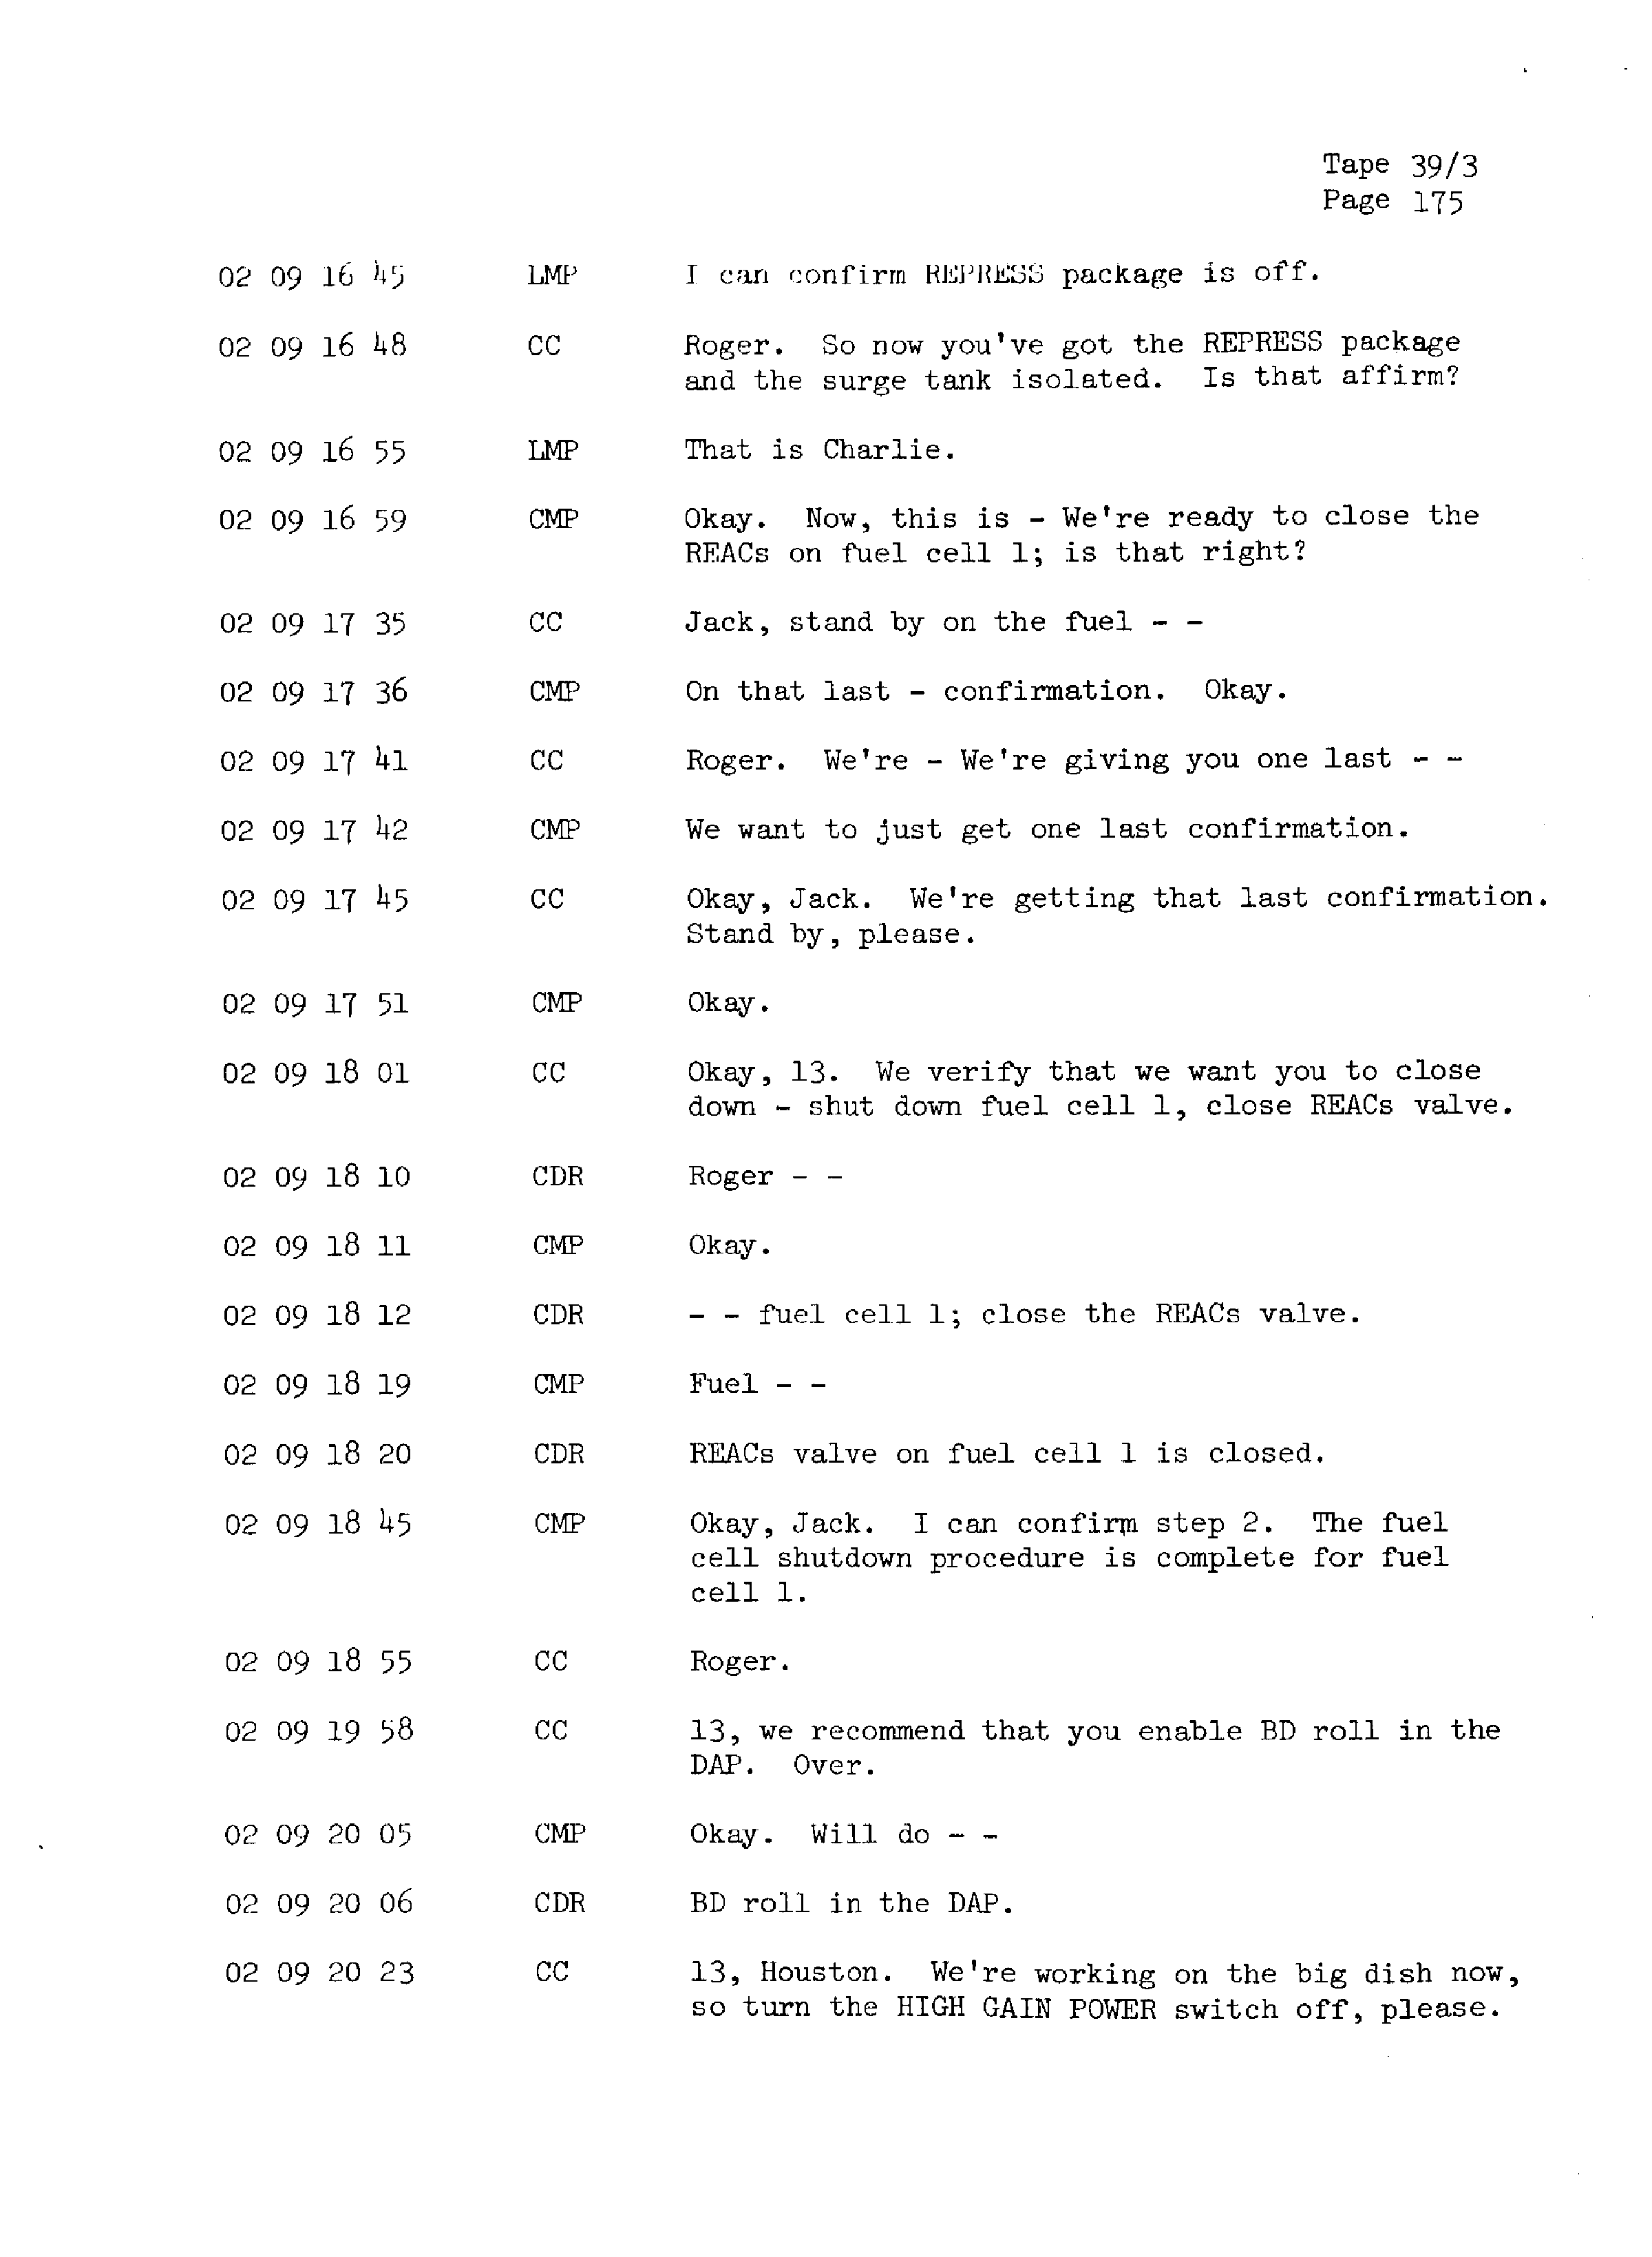 Page 182 of Apollo 13’s original transcript